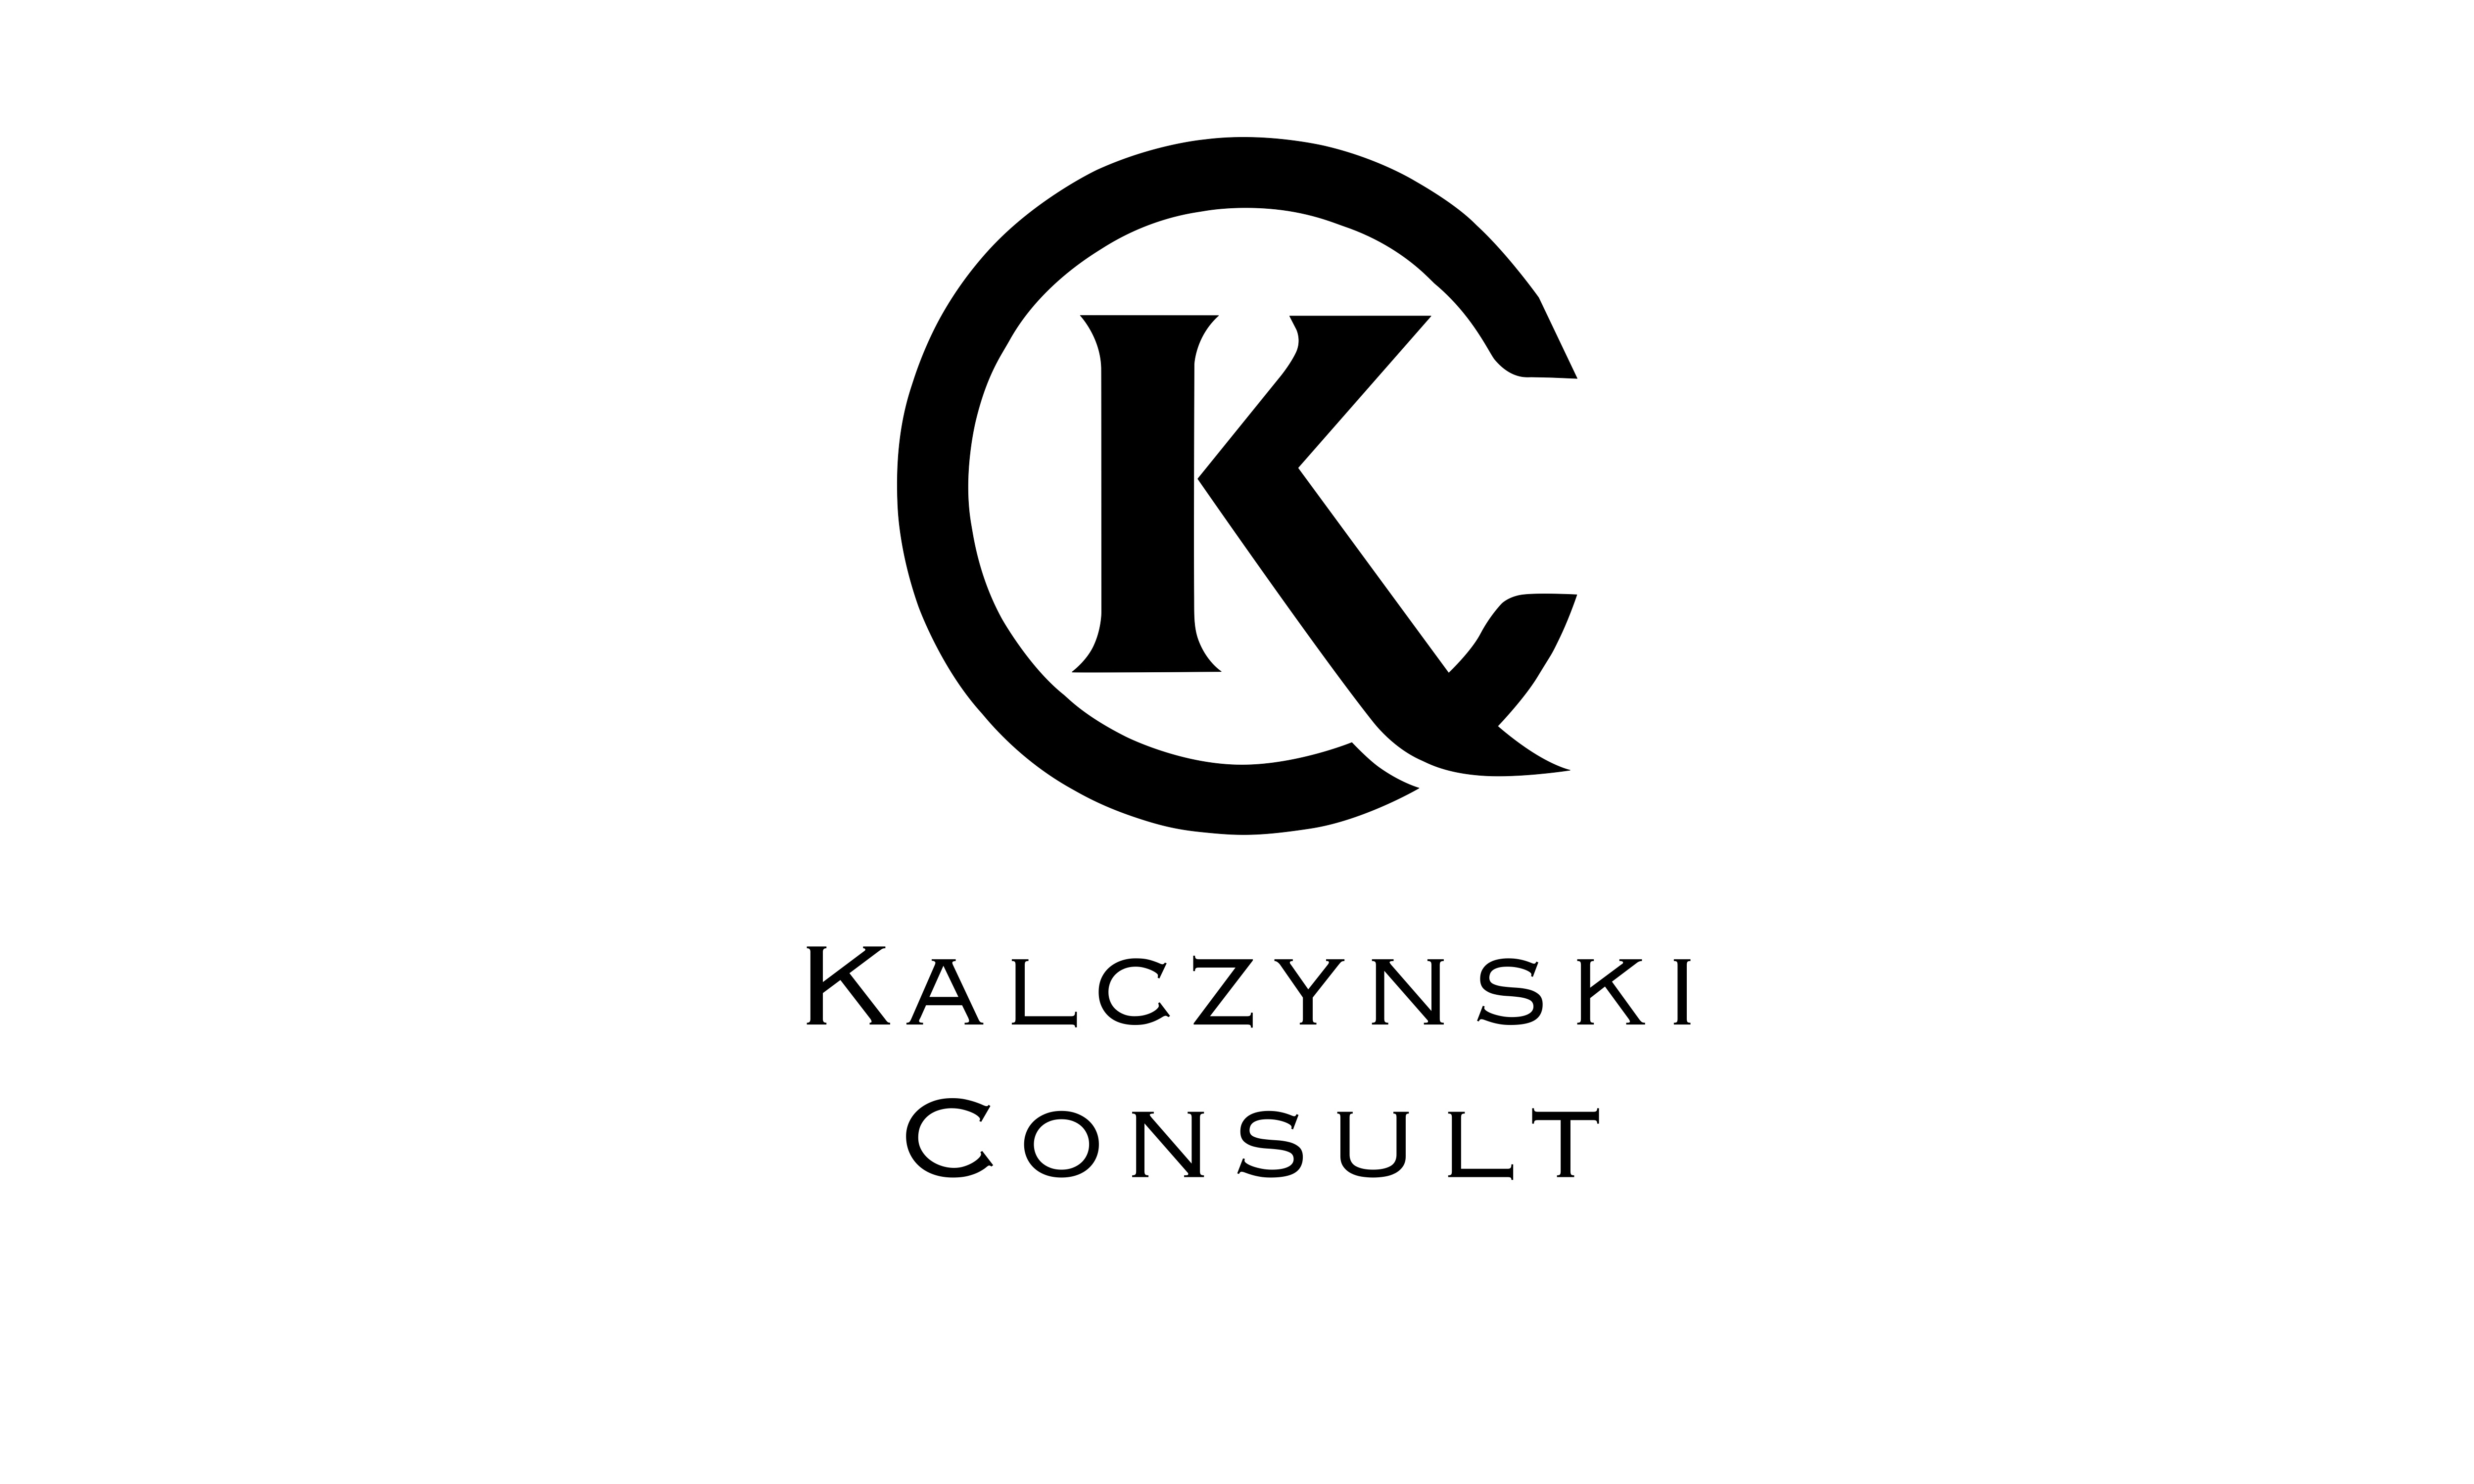 Kalczynski Consult GmbH